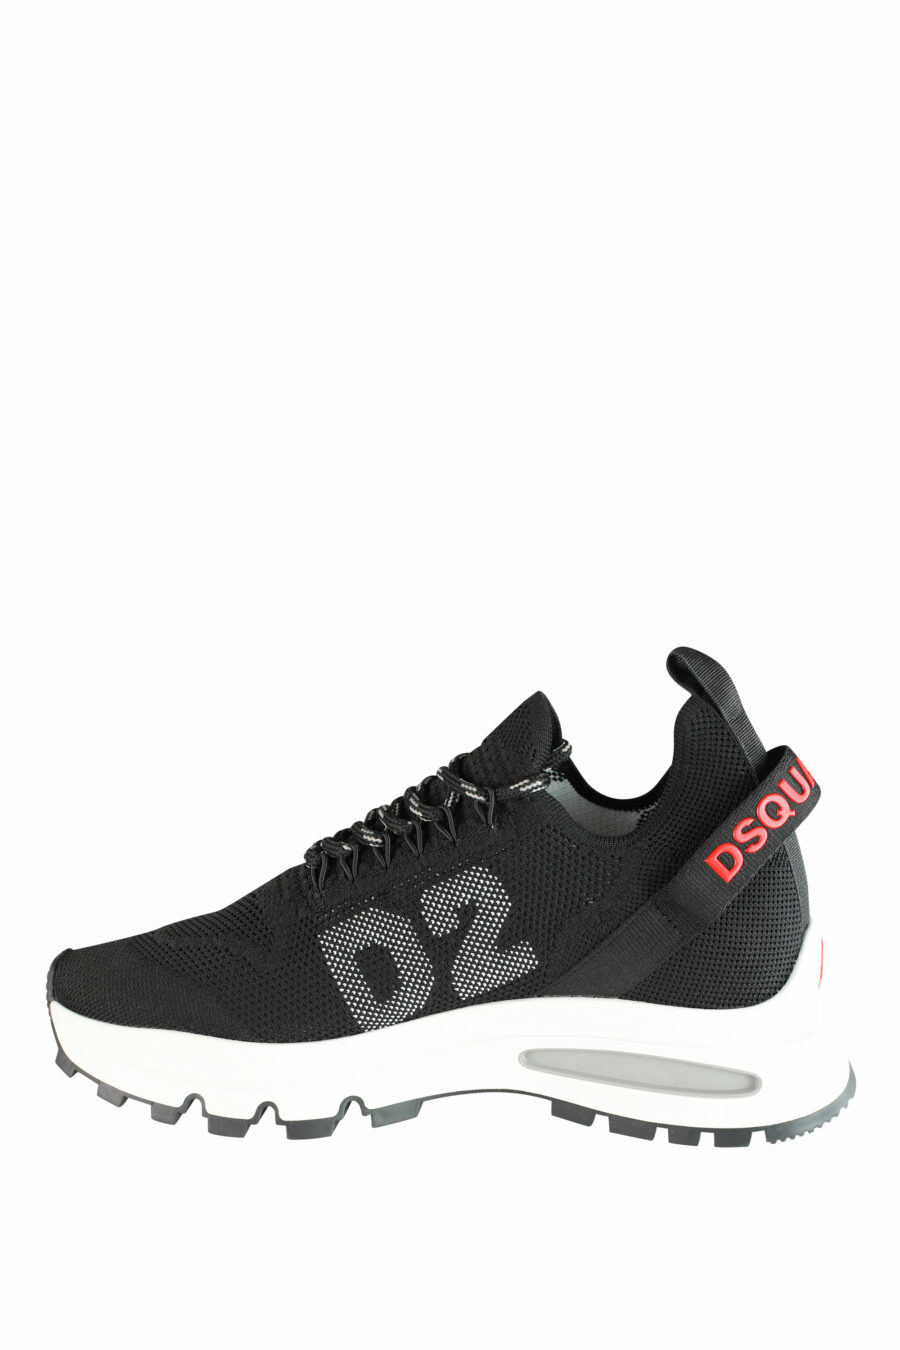 Zapatillas negras "Run D2" con logo en rojo - IMG 1416